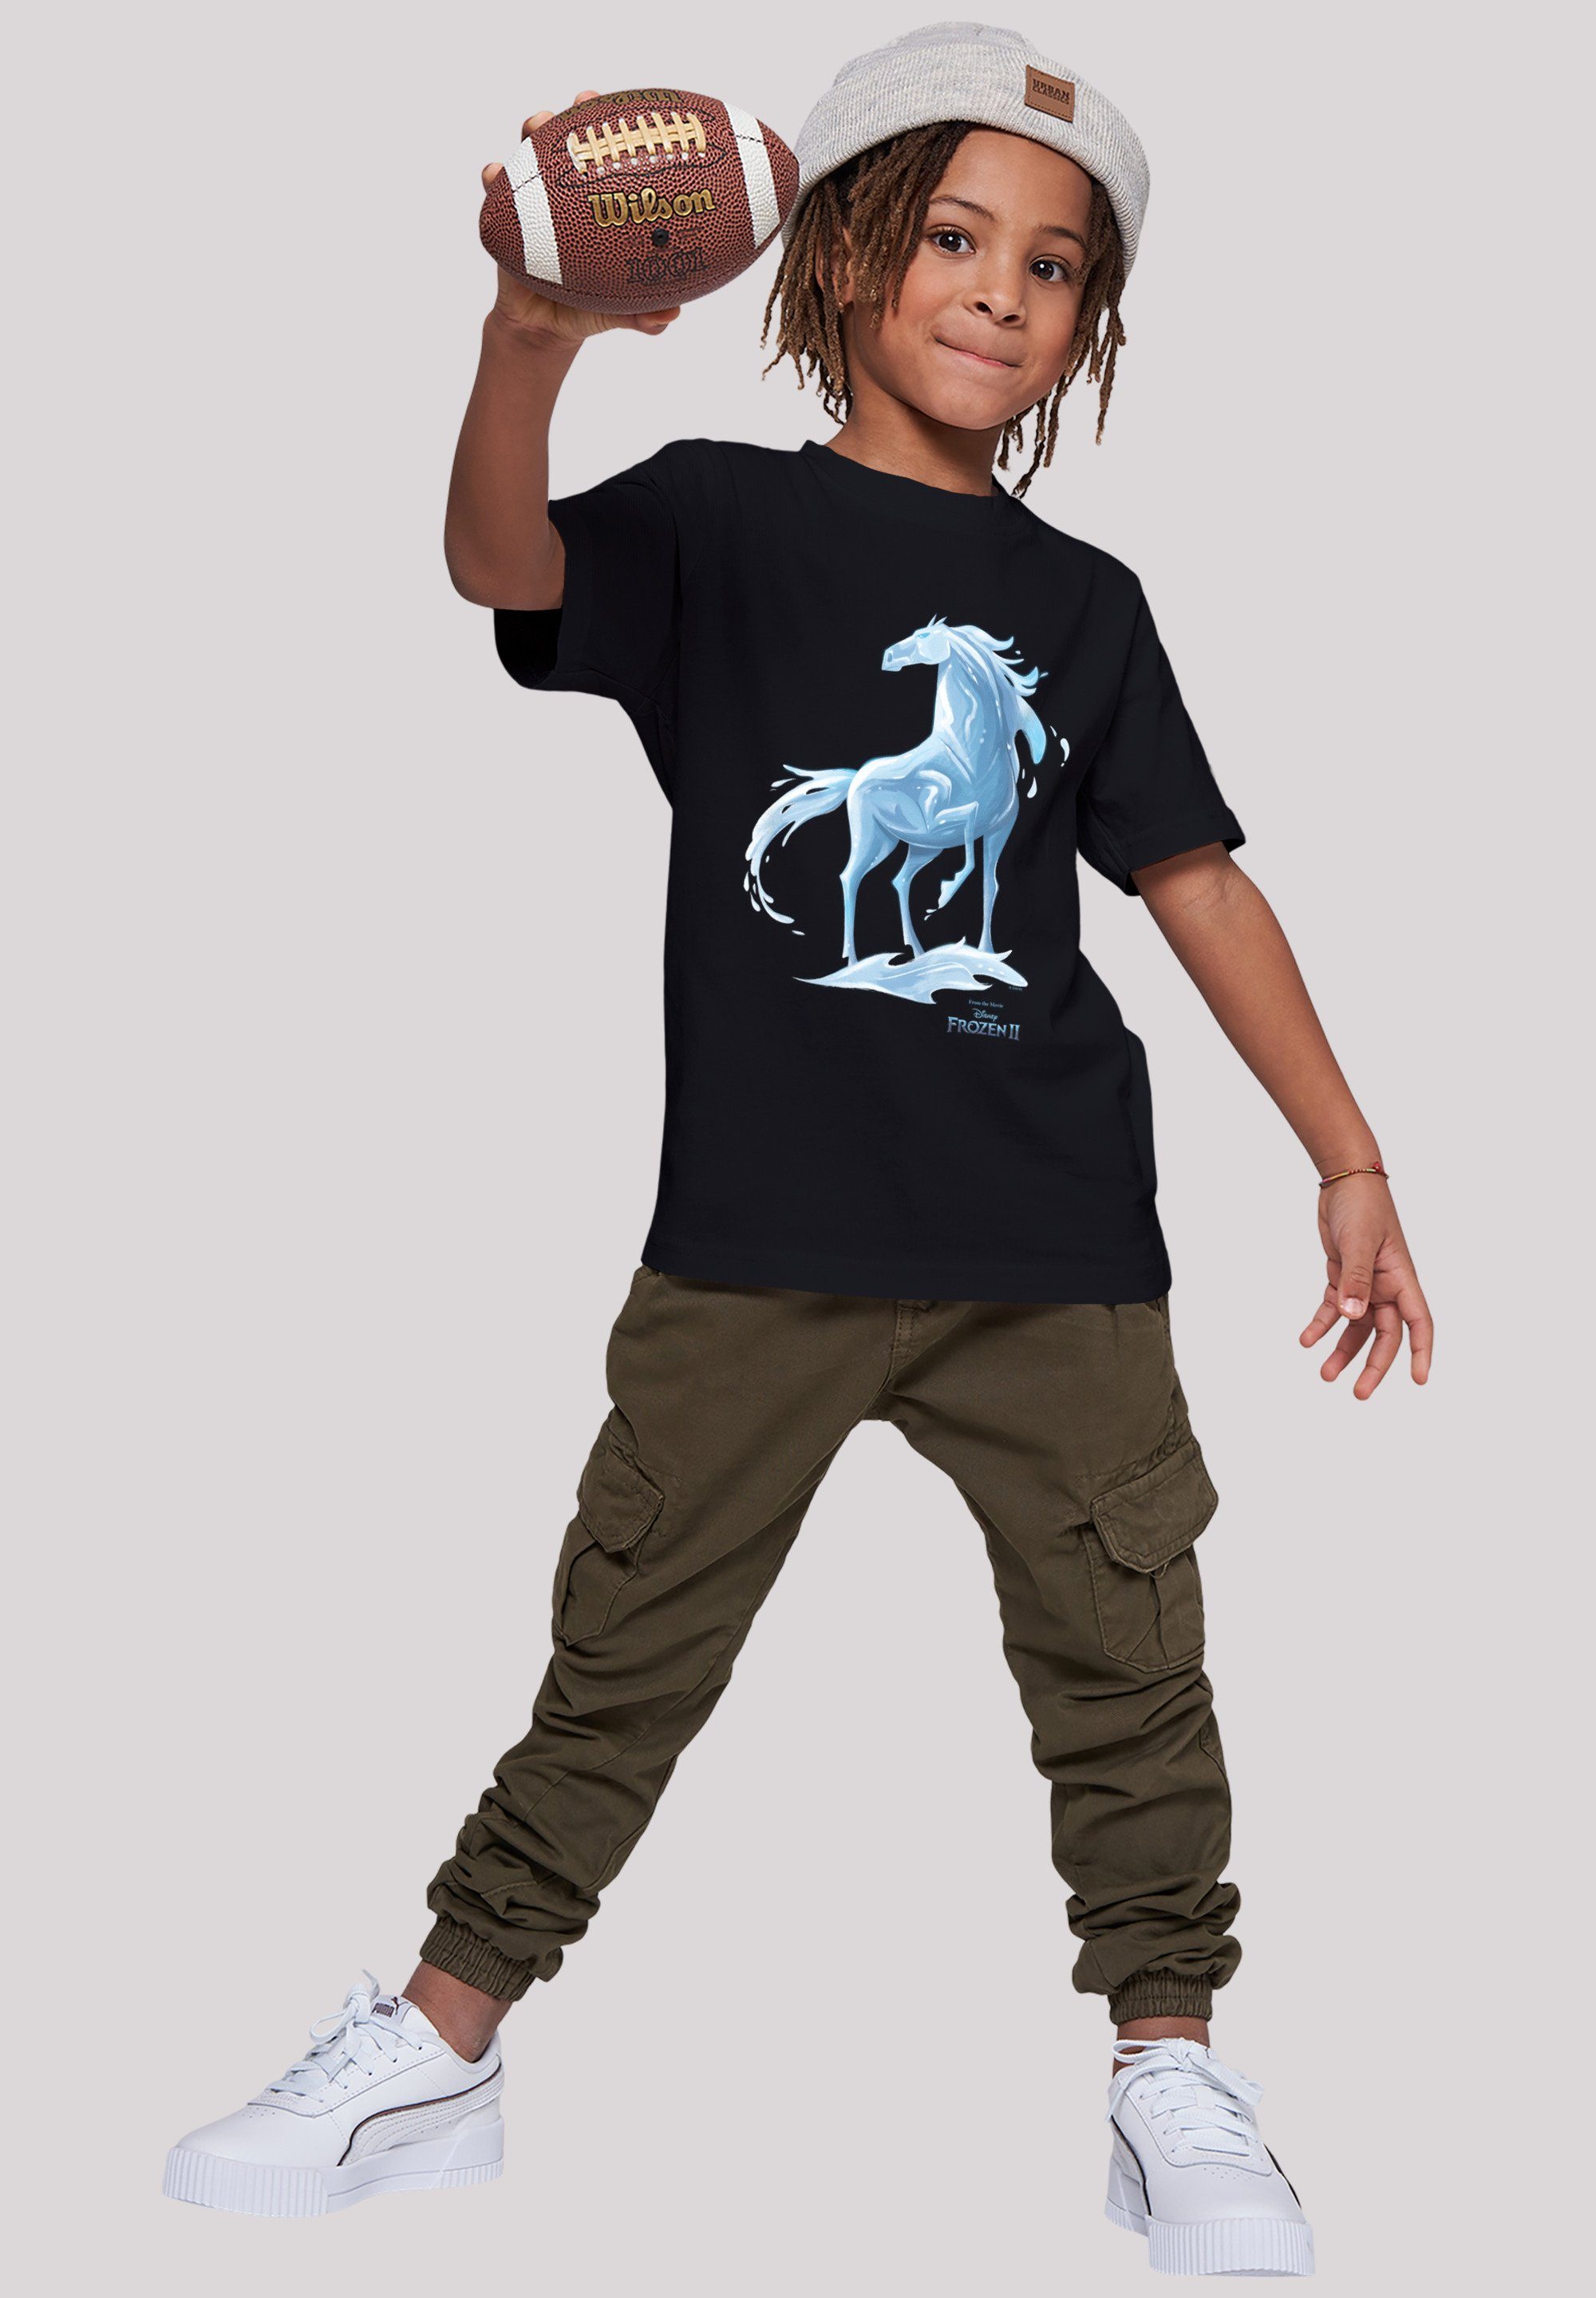 F4NT4STIC T-Shirt Disney Frozen 2 Kinder,Premium Merch,Jungen,Mädchen,Bedruckt Pferd Unisex Wassergeist Nokk